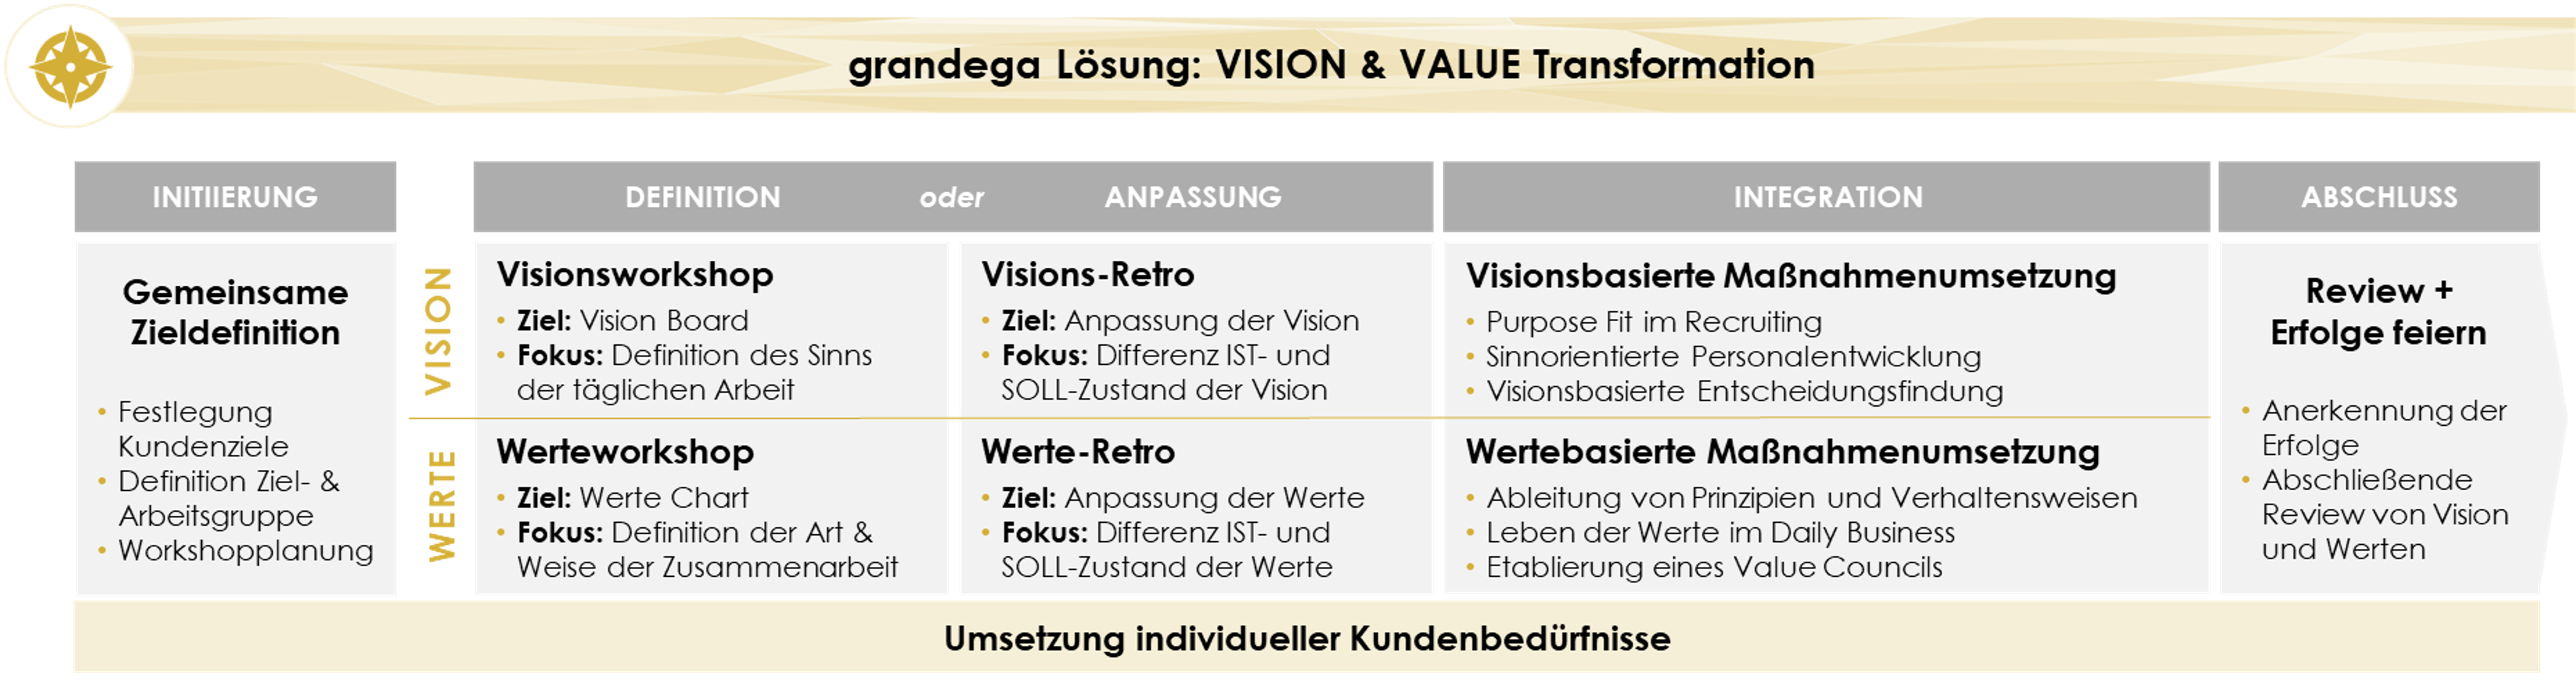 Vision Values_groß_white